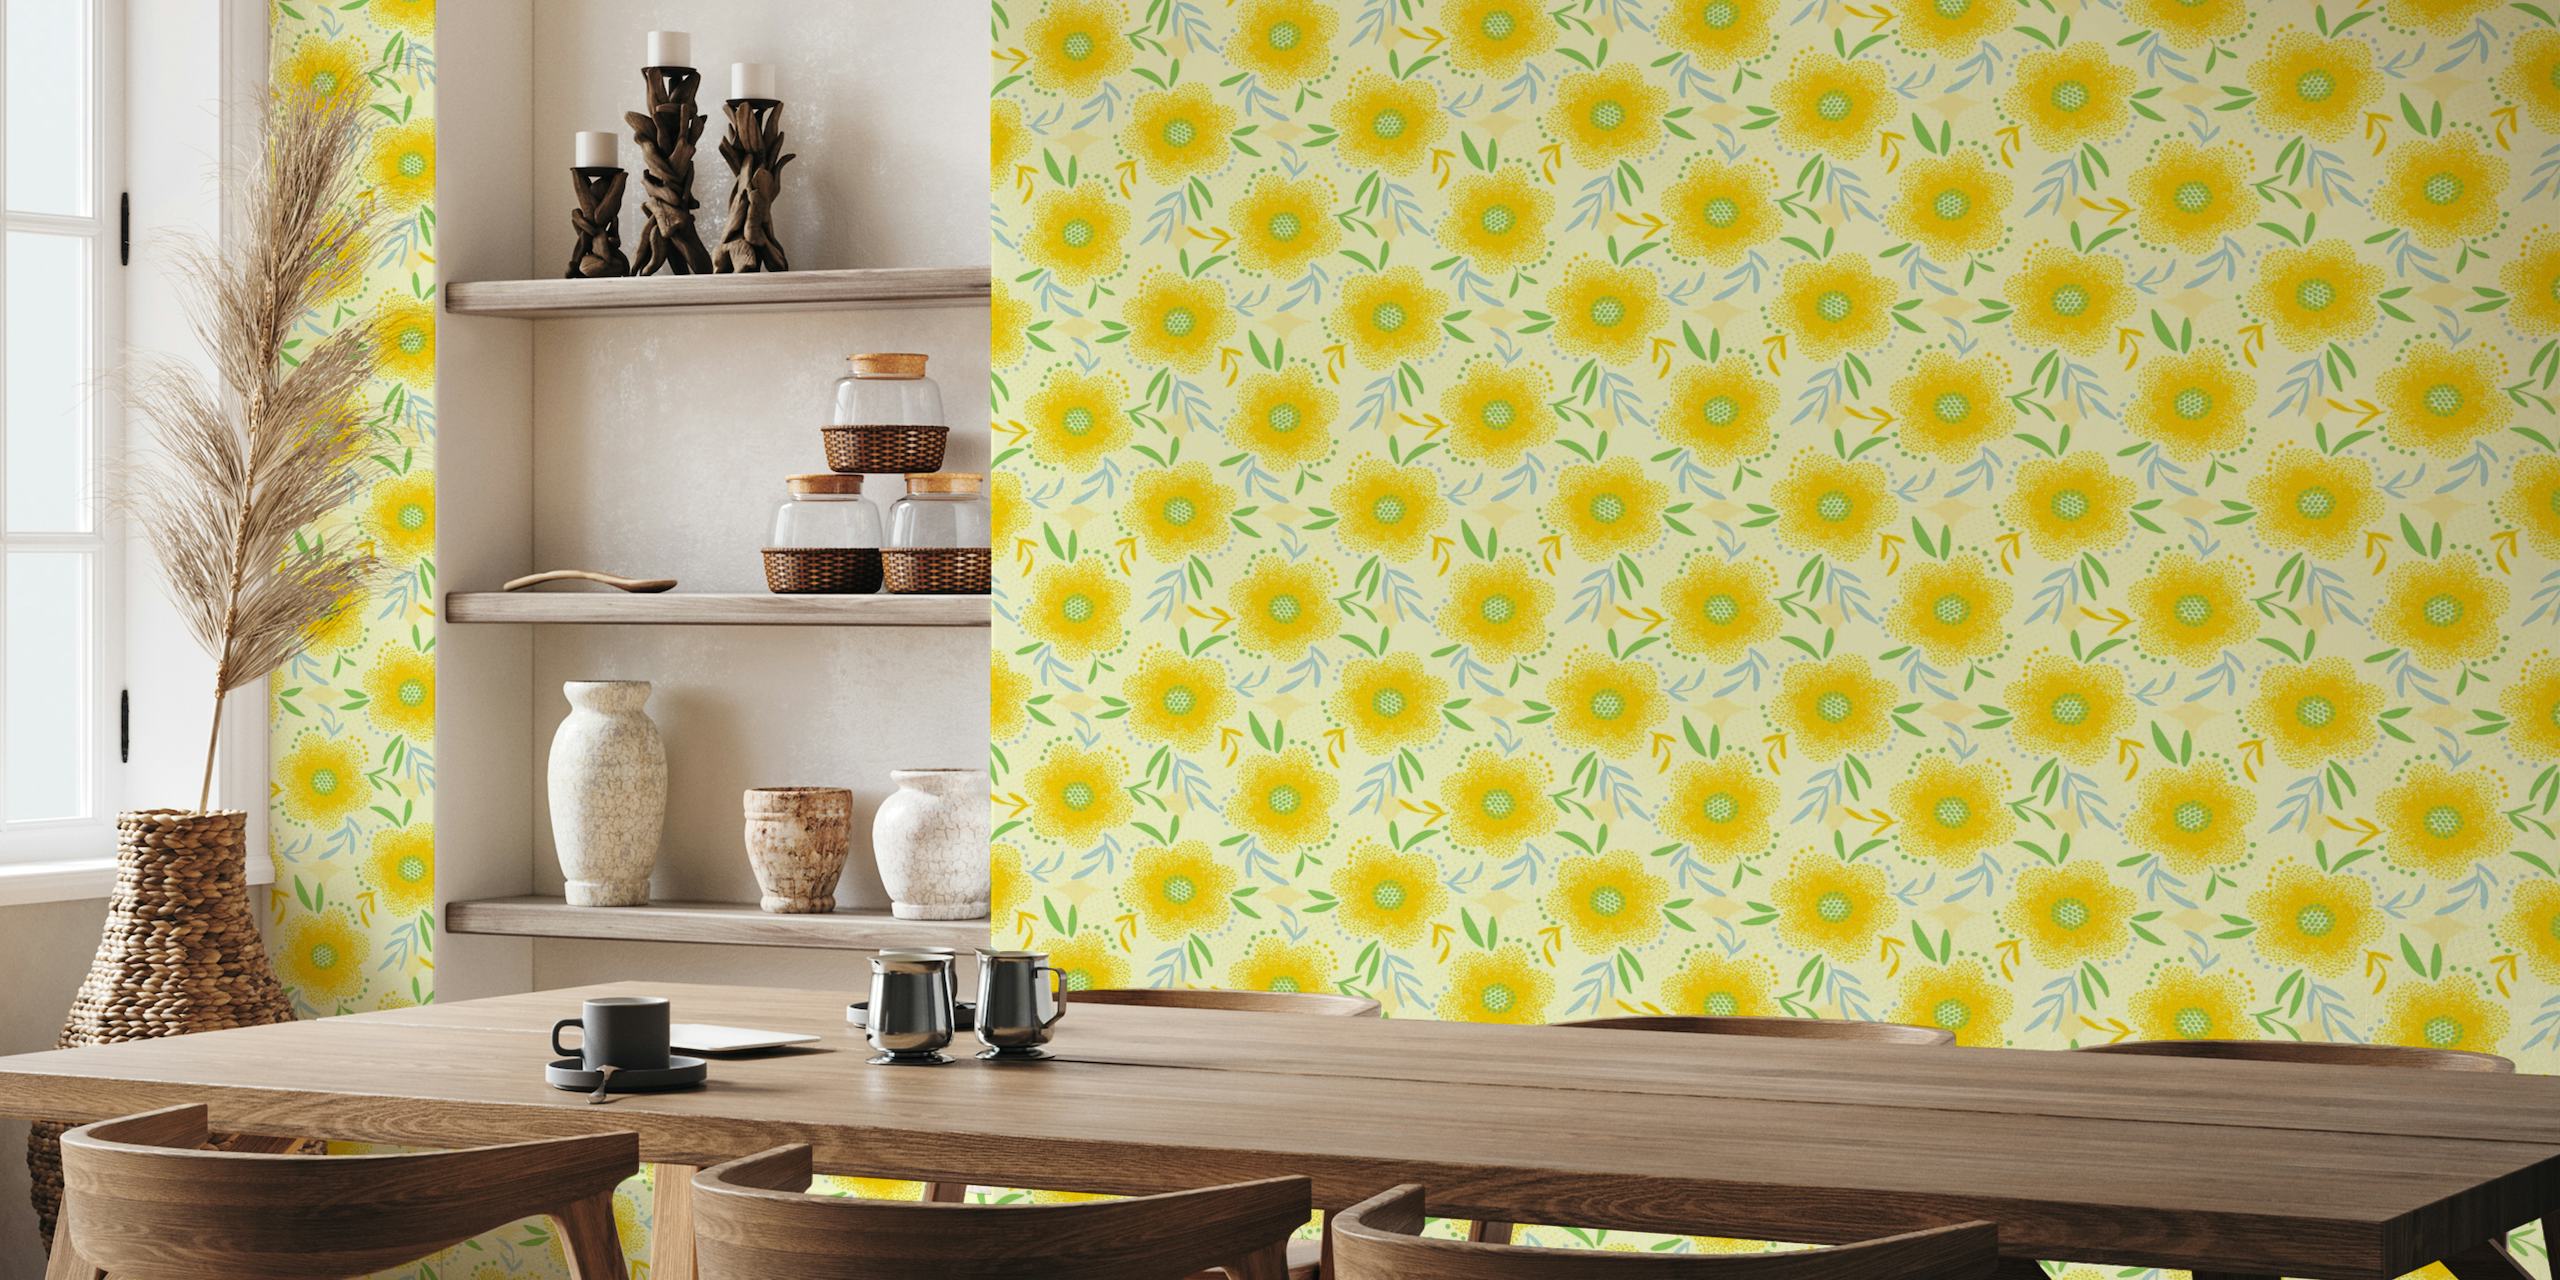 Kirkkaan keltainen ja vihreä boho-tyylinen kukka-seinämaalaus osoitteesta happywall.com